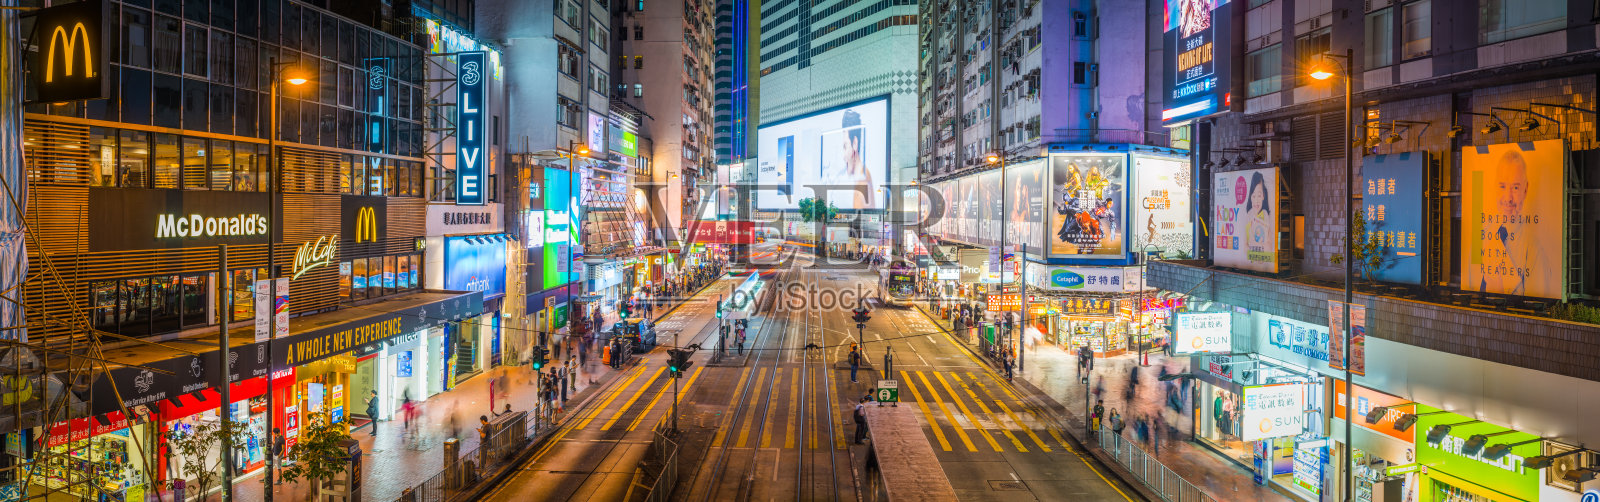 香港铜锣湾繁华商业街霓虹夜景照片摄影图片